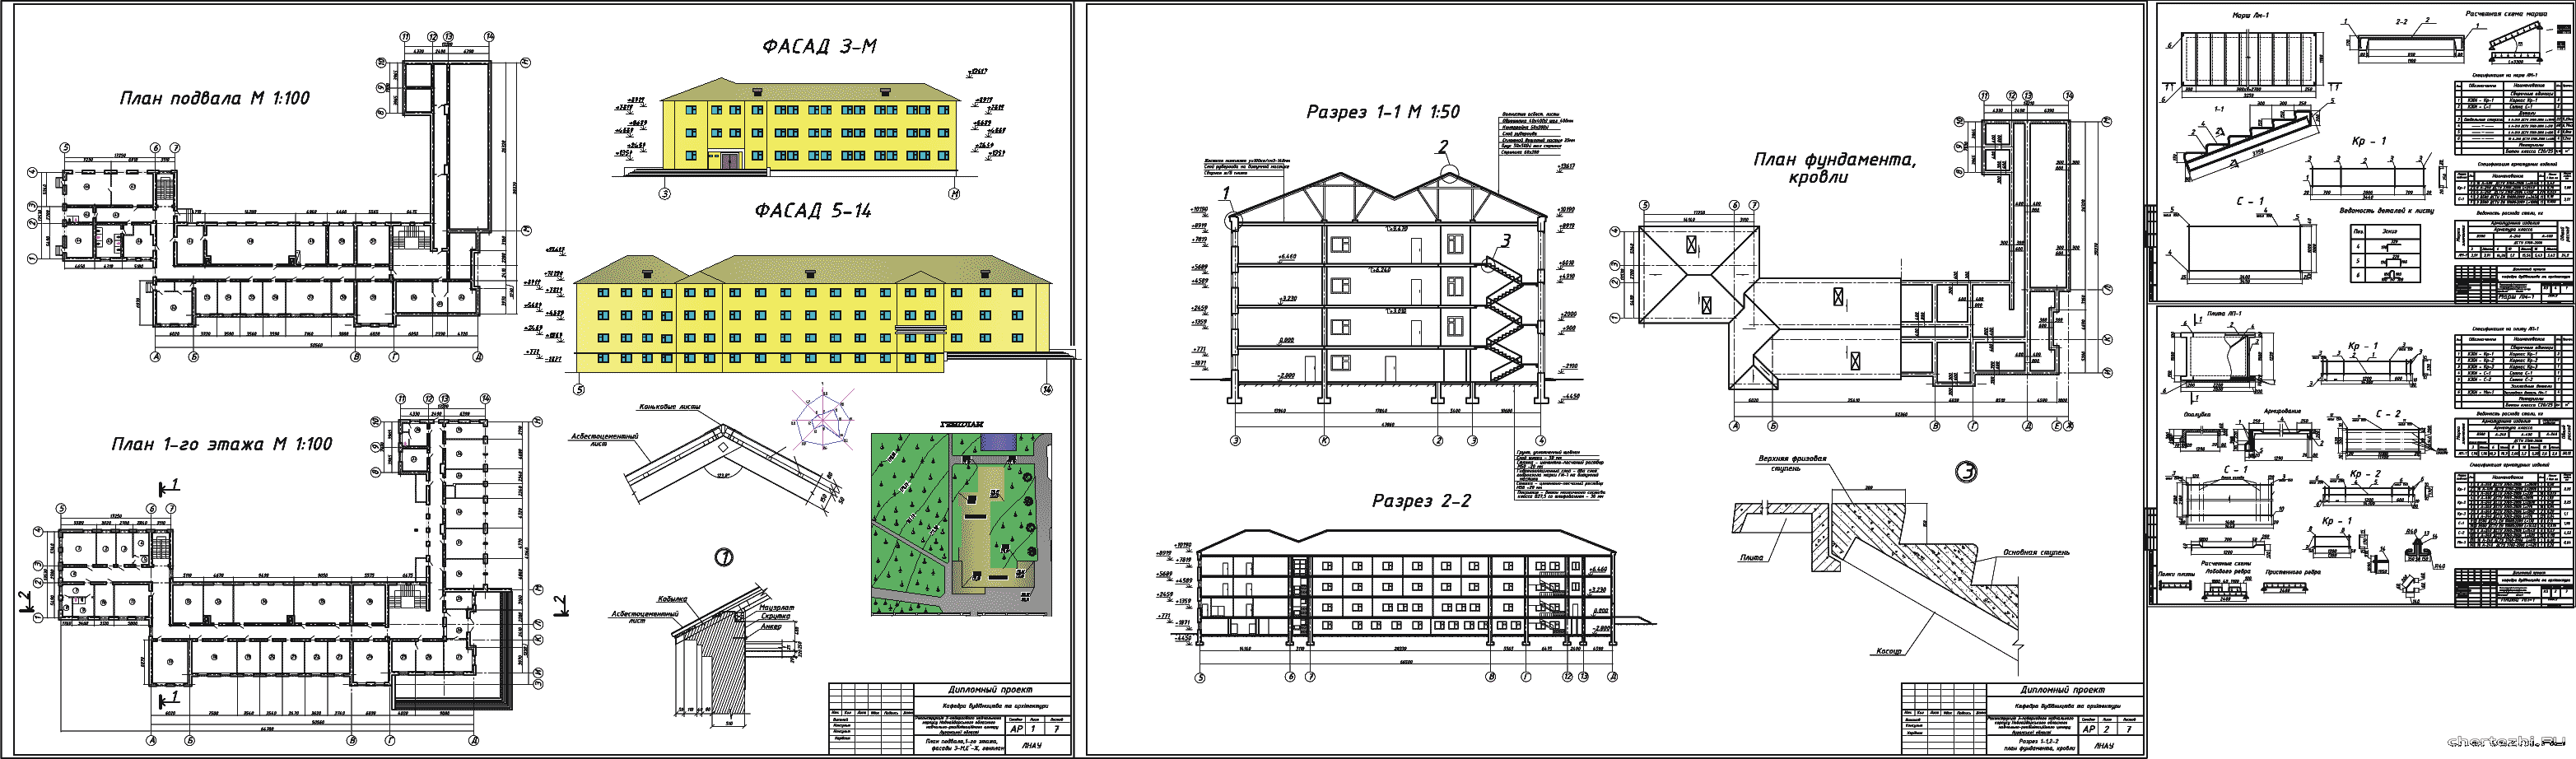 Дипломный проект - Реконструкция 3 - х этажного учебного корпуса 66 х 41 м реабилитационного центра в Луганской области